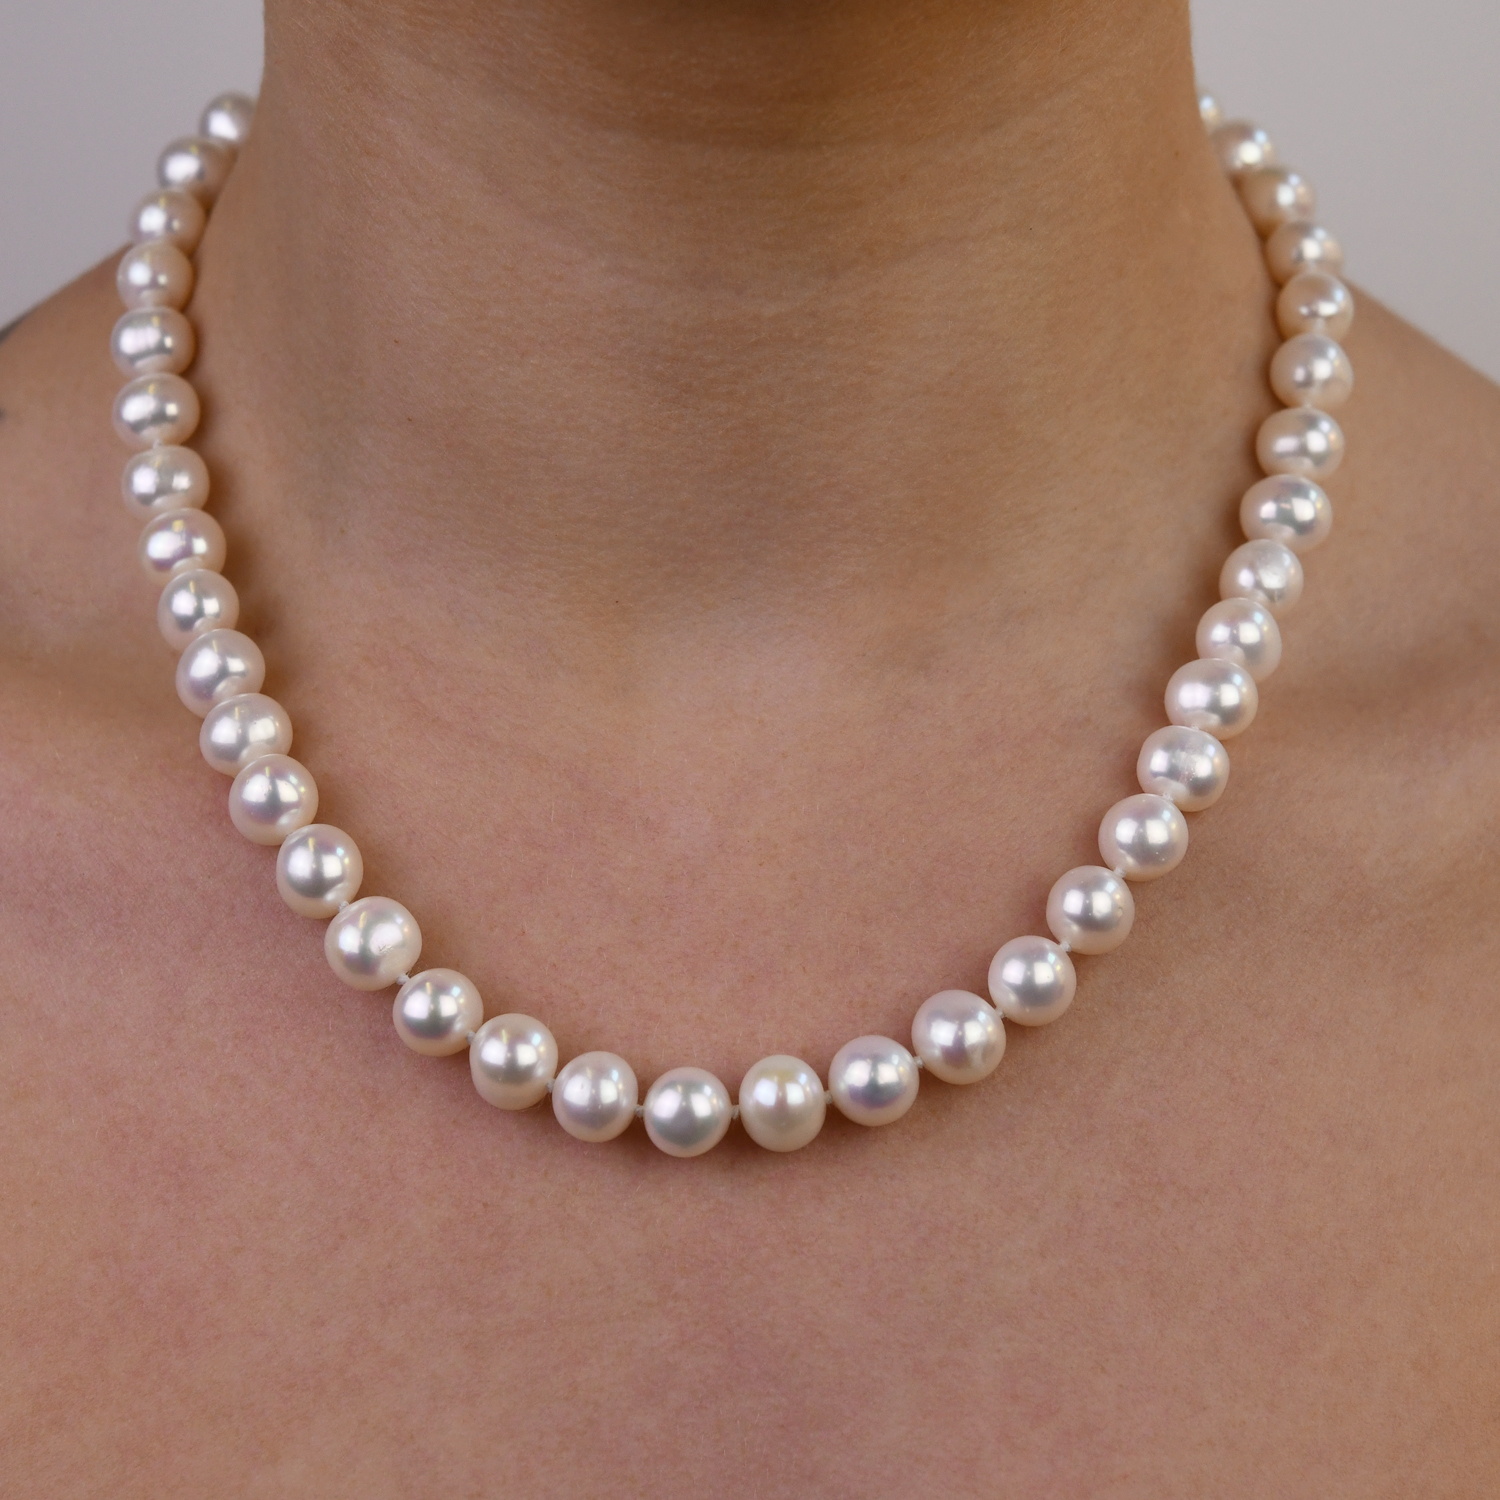 Freshwater pearl necklace - Von Treskow